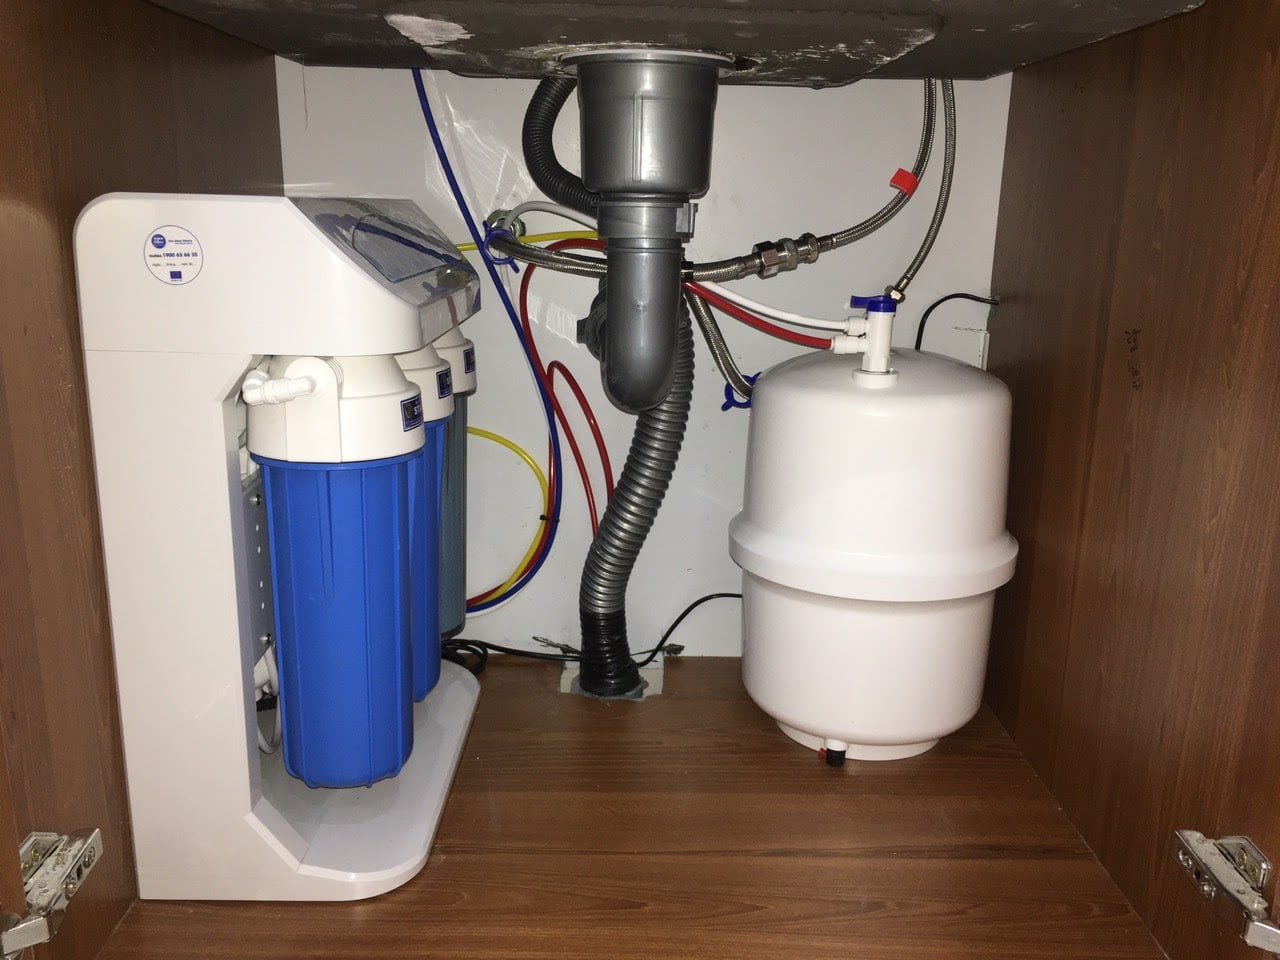 Máy lọc nước chạy liên tục không tự ngắt là lỗi thường gặp ở thiết bị lọc nước gia đình